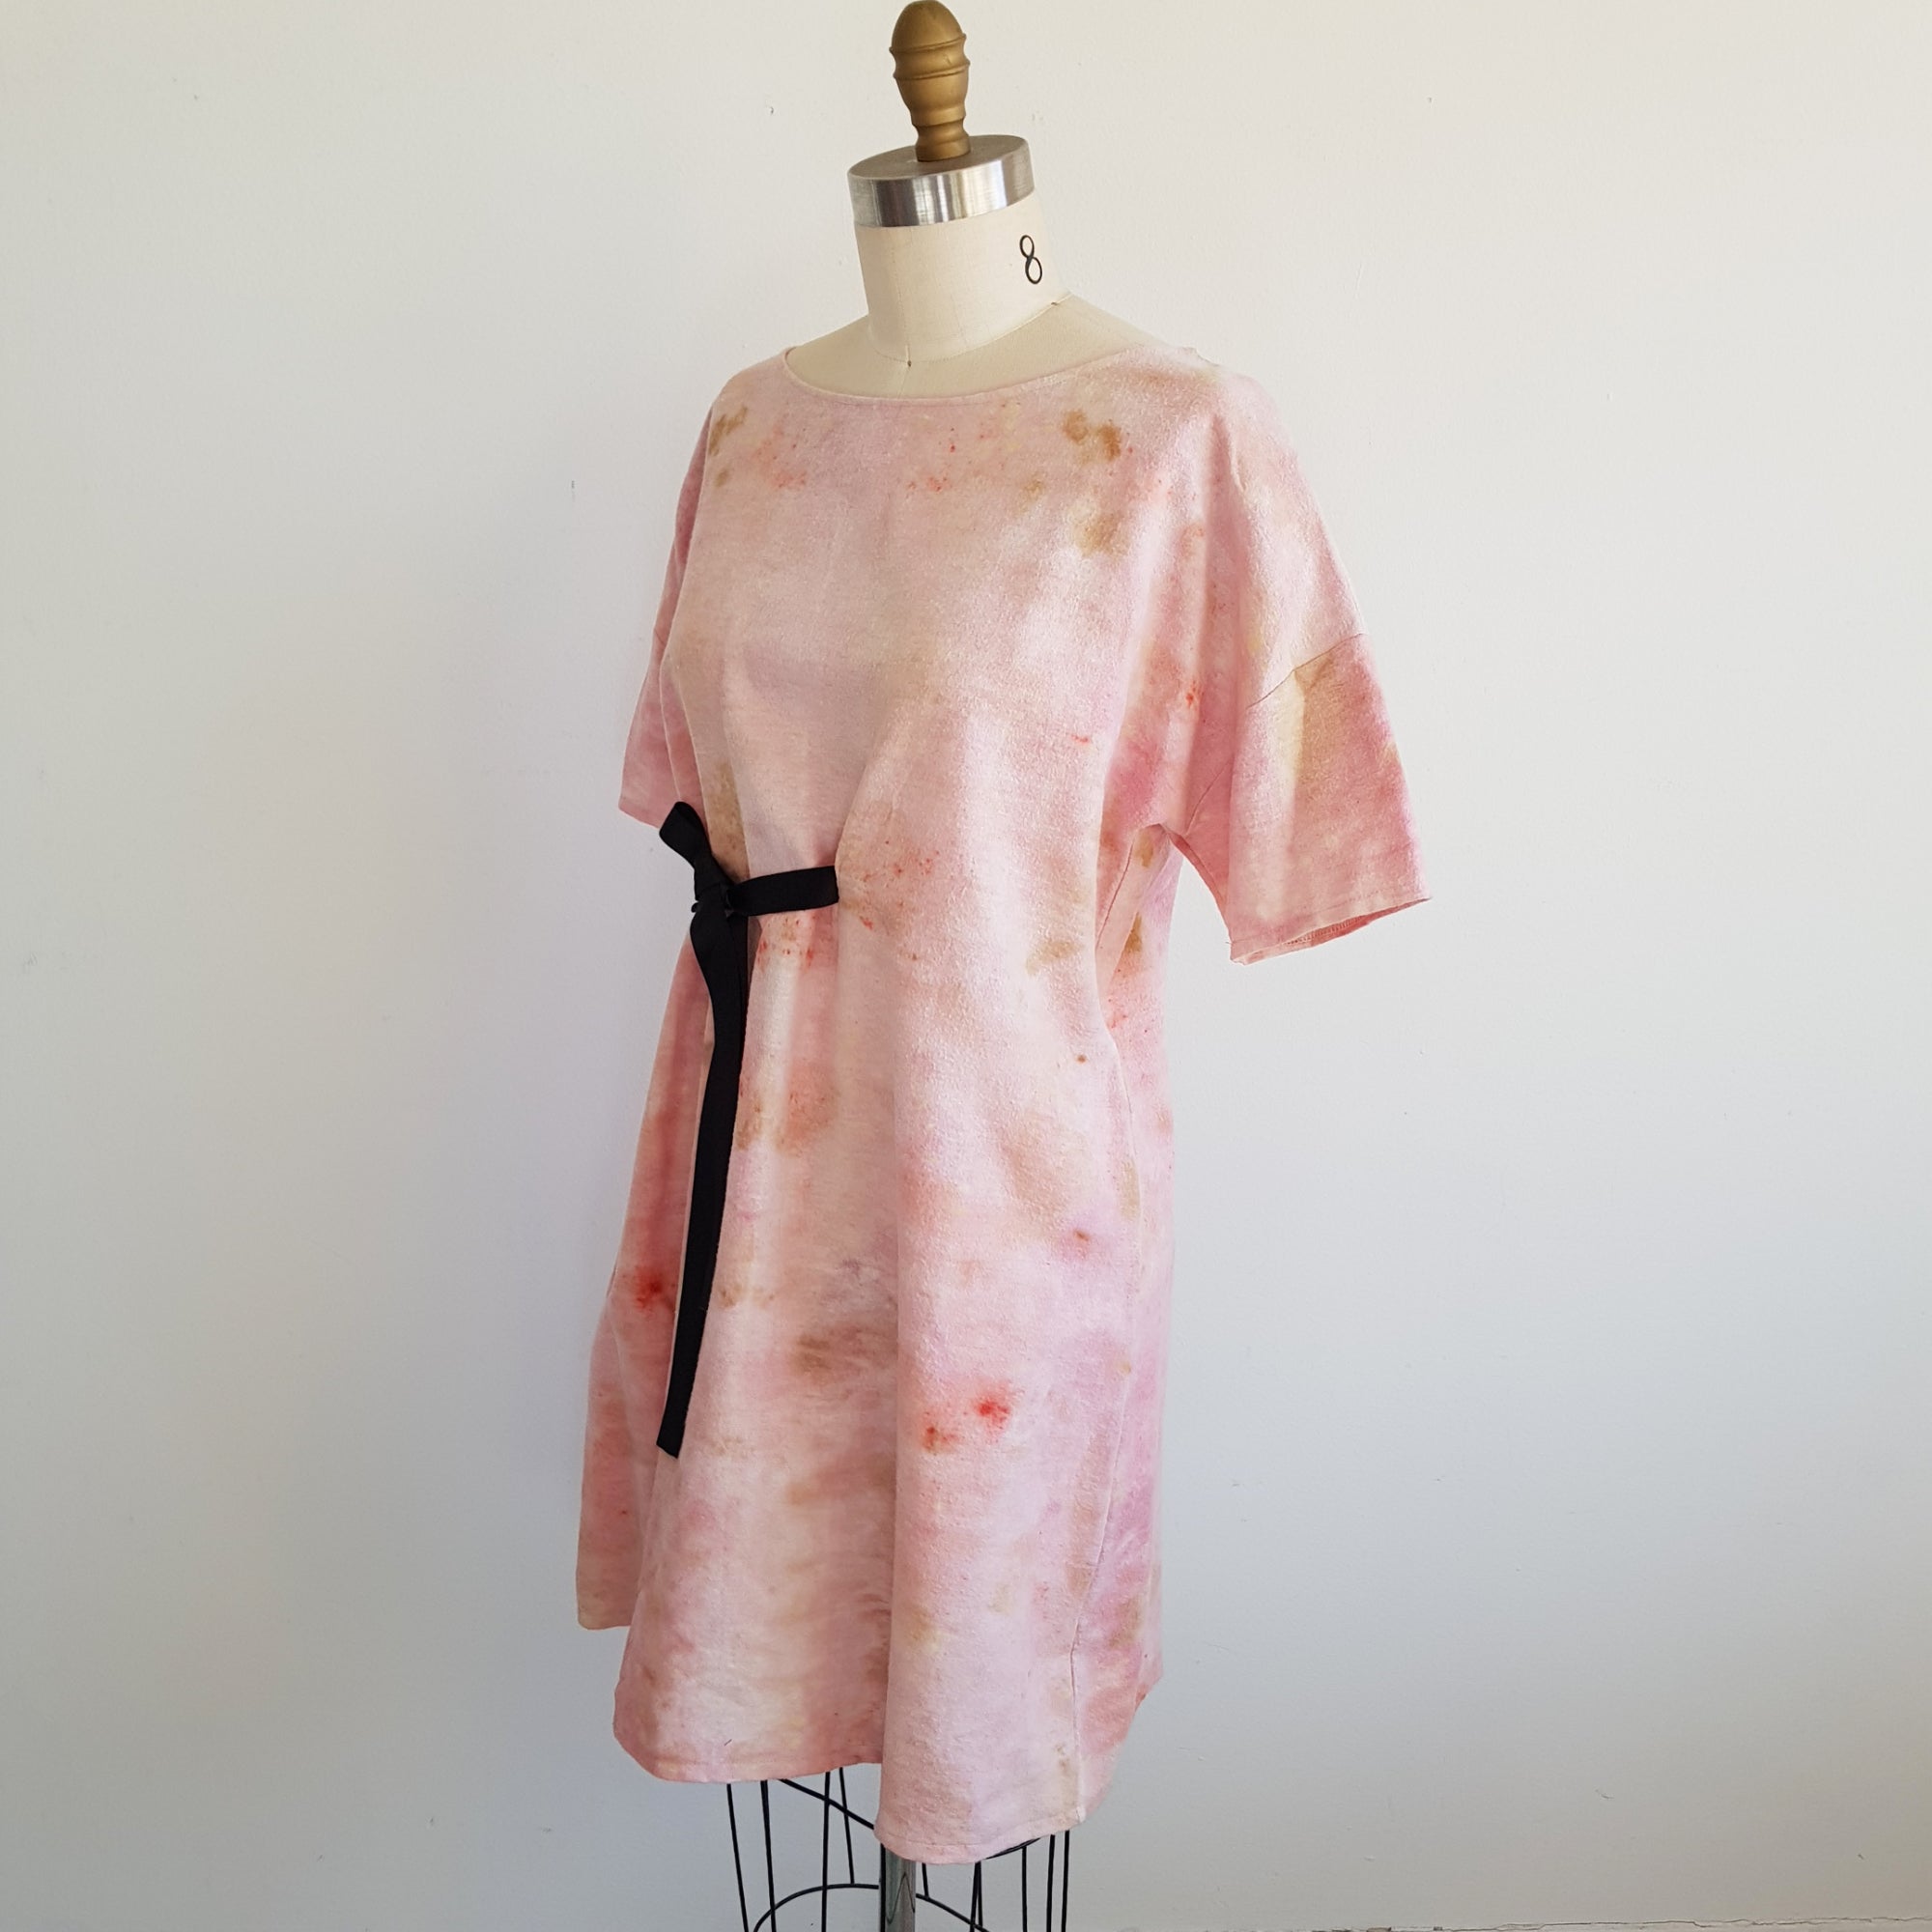 Eco Print cotton botanical – prints fleece leaf xsilk dye dress